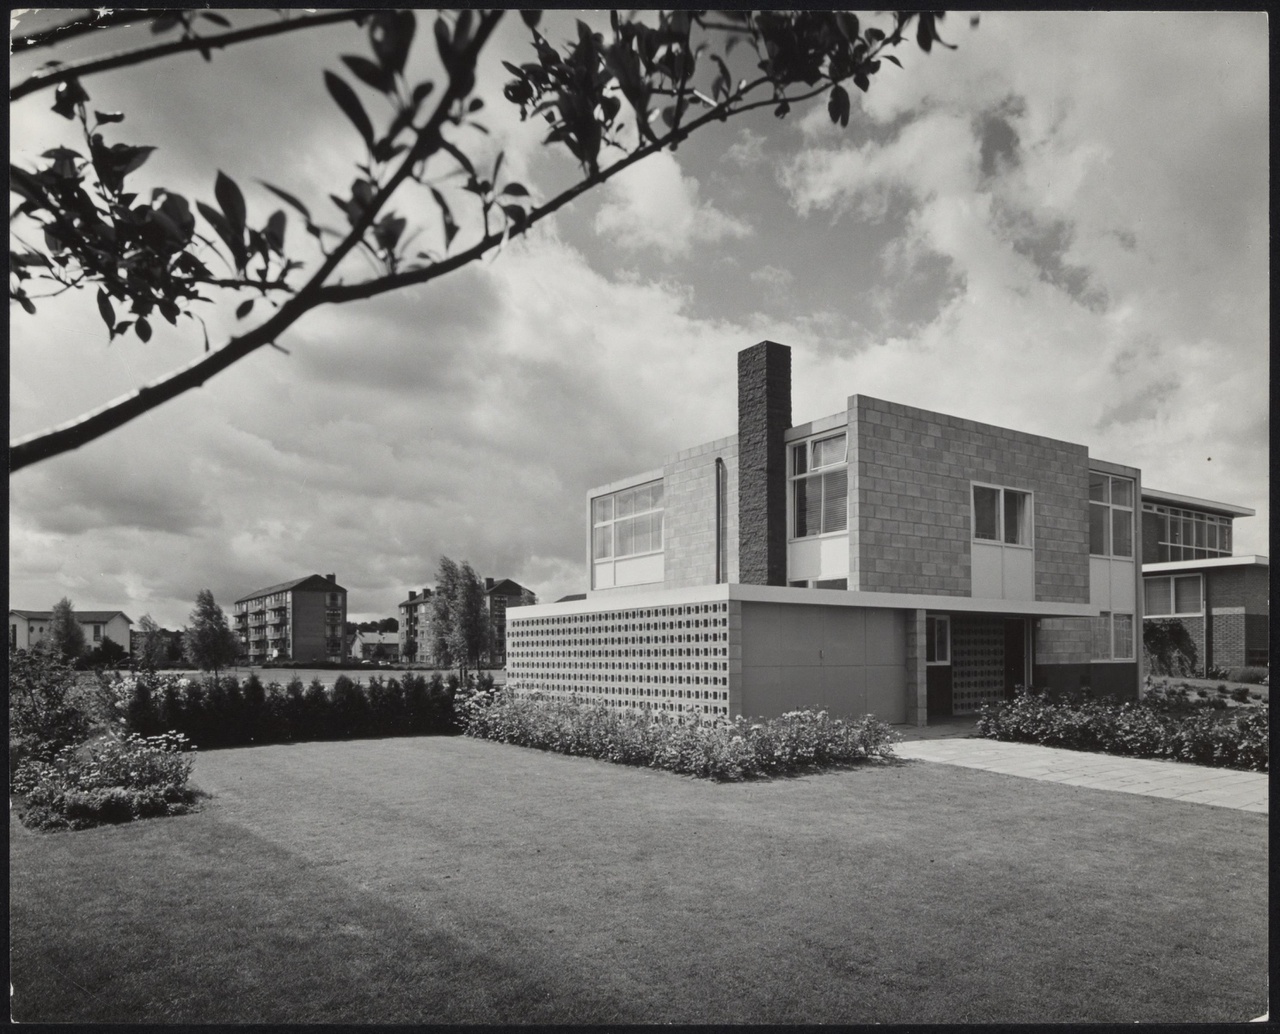 Afbeelding van woning Theissing, Utrecht, ca.1959, vanaf de weg, schuin over gazon met tak in hoek